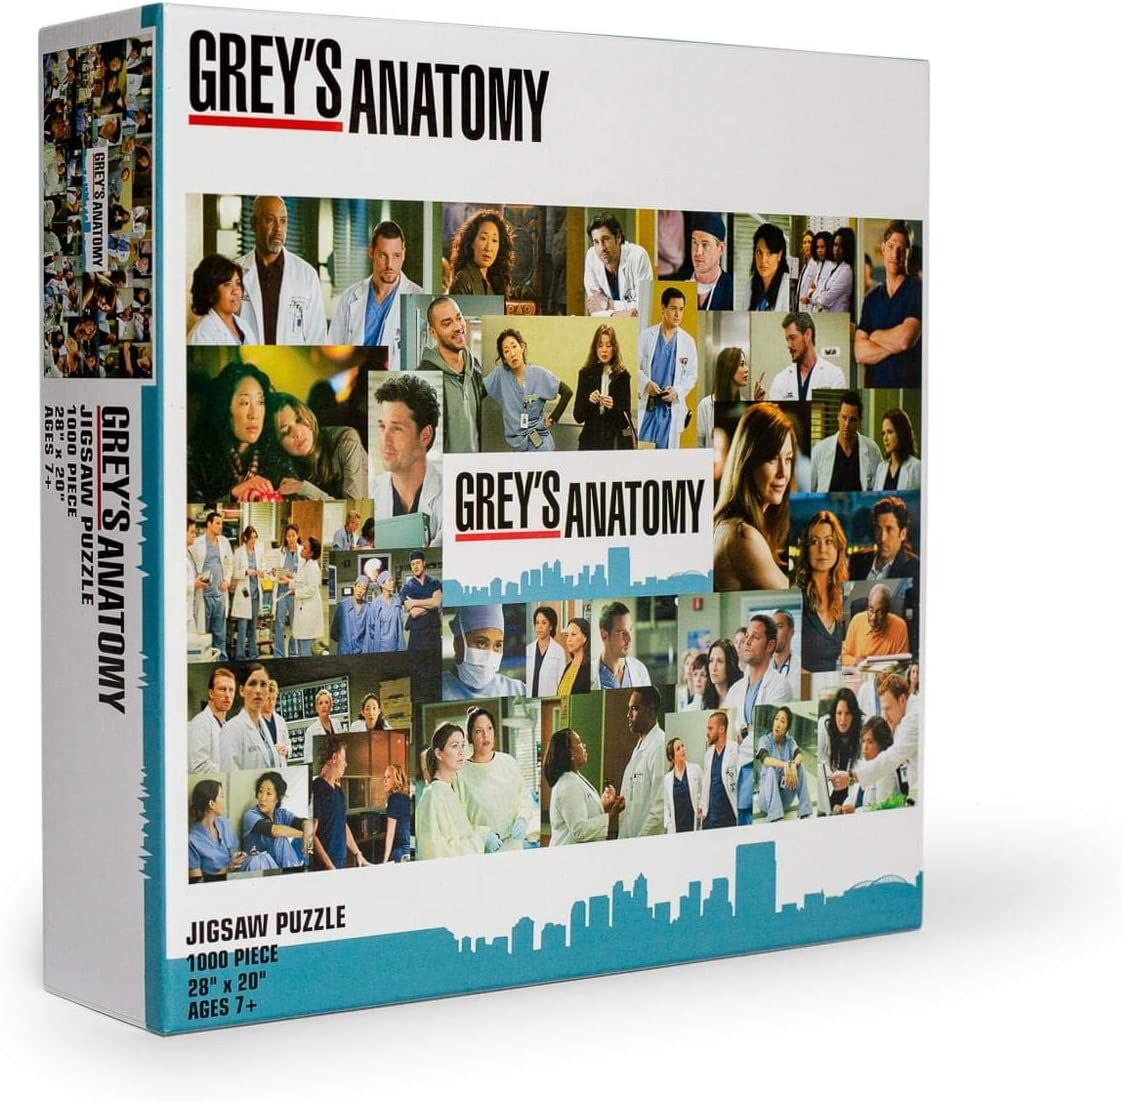 Quebra-cabeça de Grey's Anatomy Collage 1000 peças para adultos 1